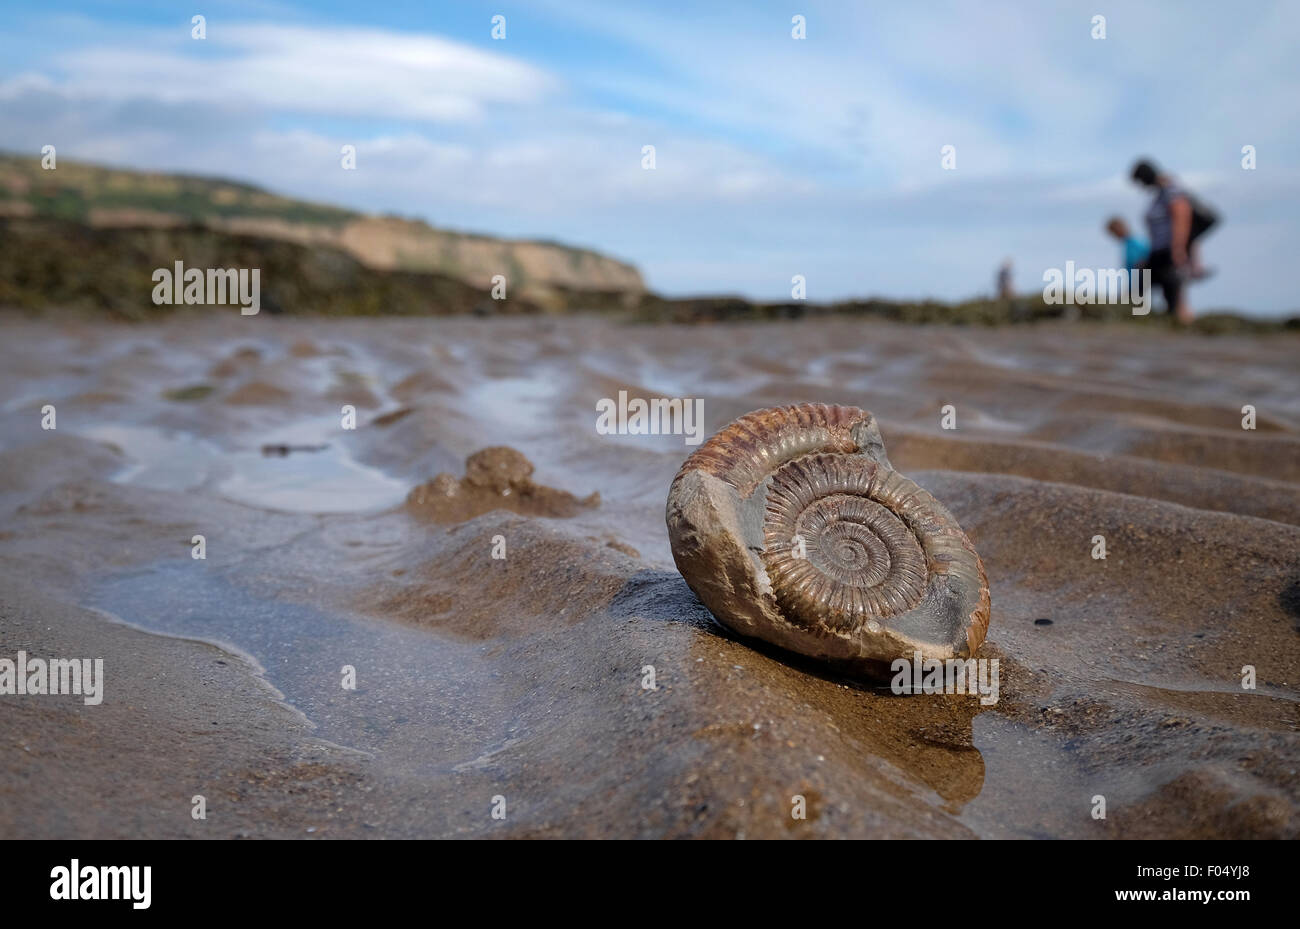 Un fossile d'ammonite sur la plage de Robin Hood's Bay, une partie de la côte jurassique du Yorkshire, UK Banque D'Images